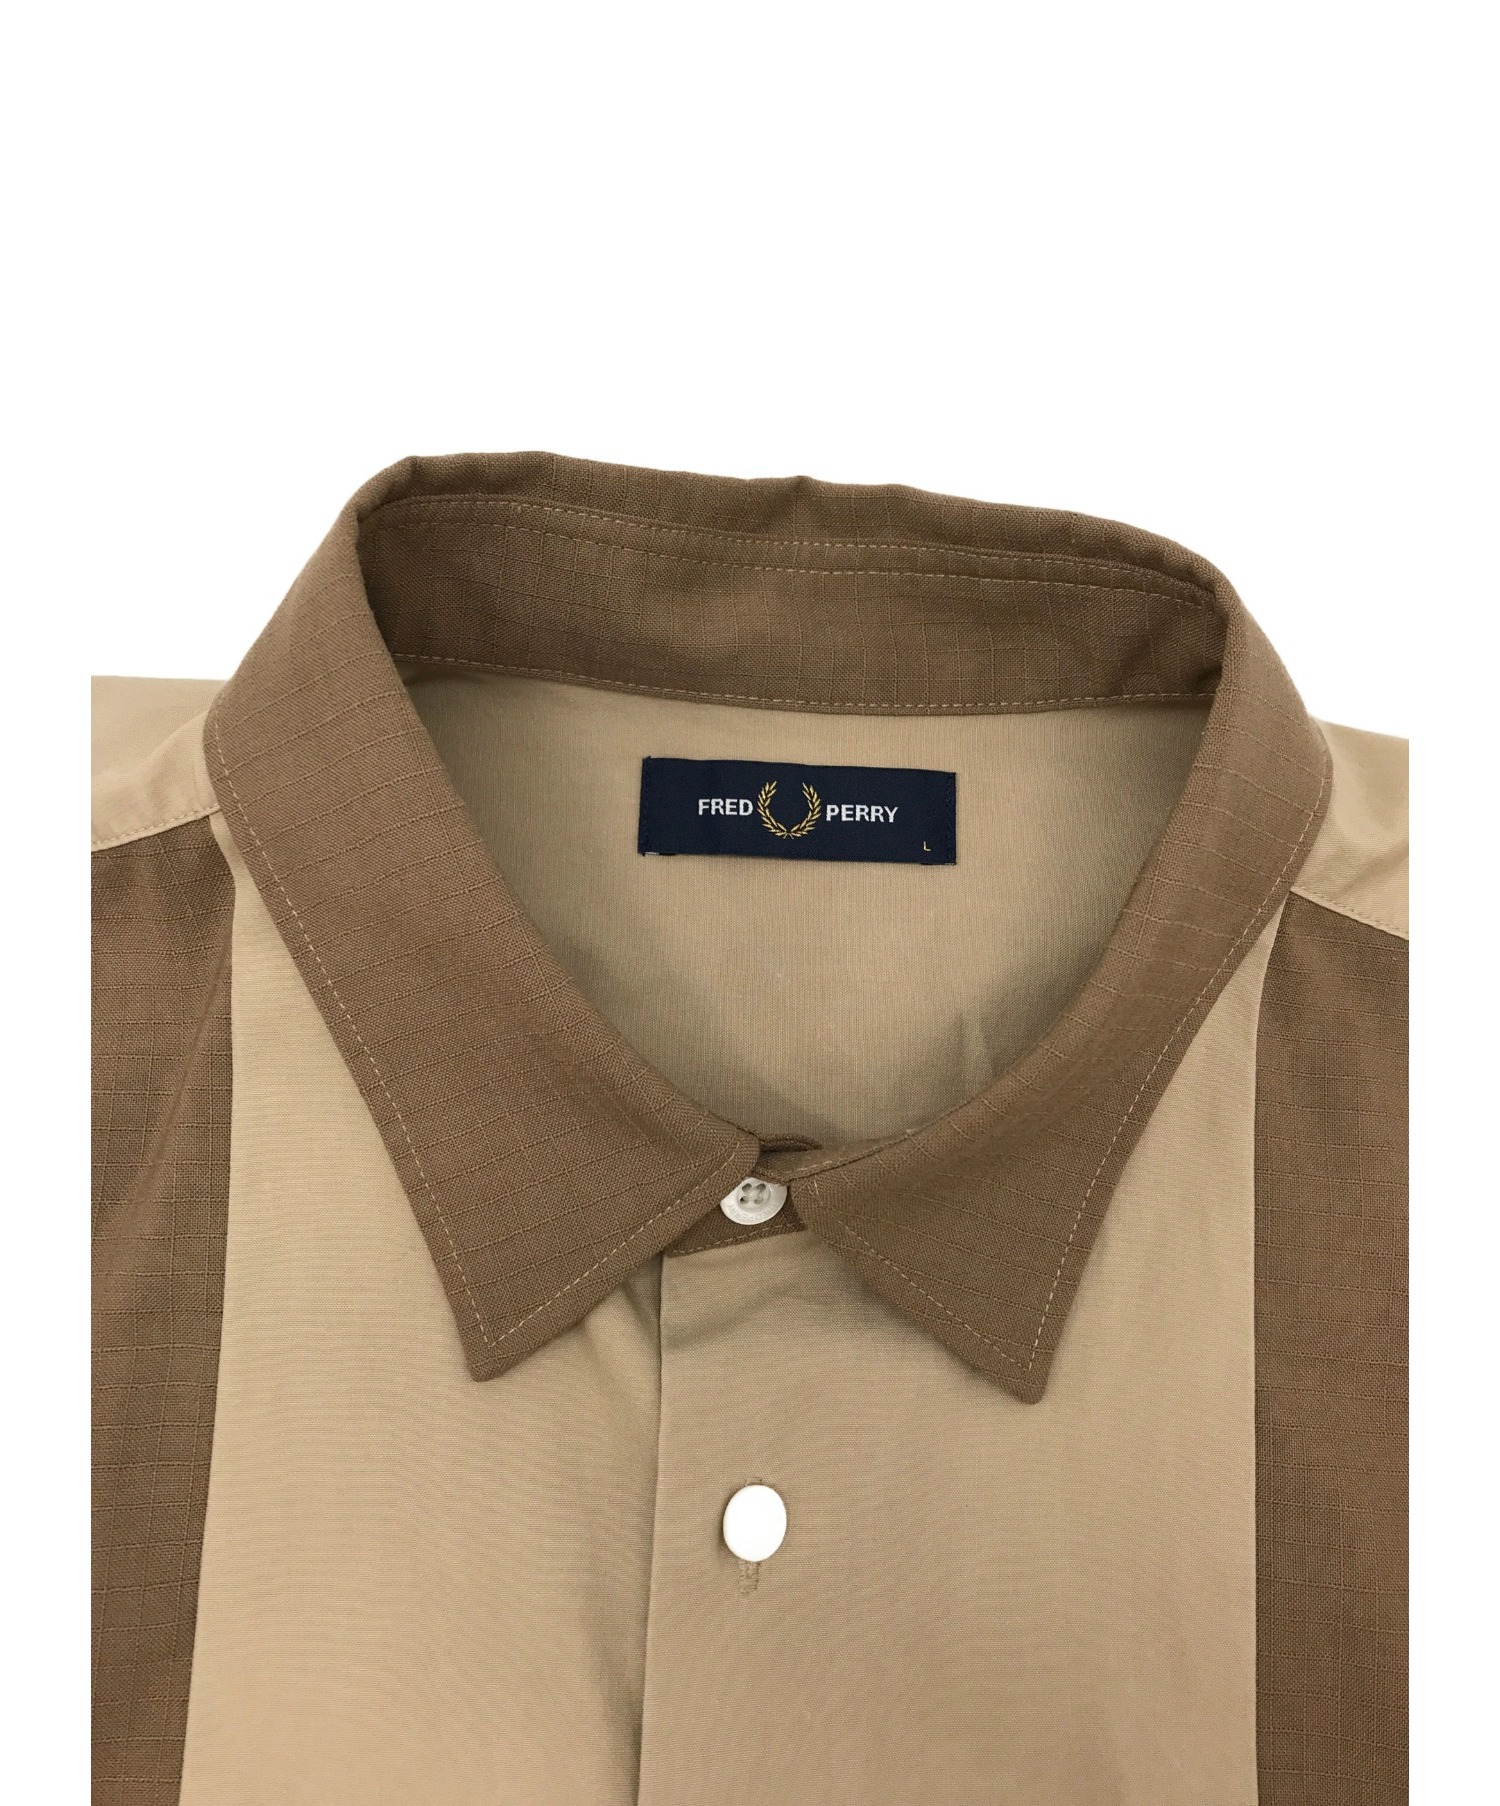 FRED PERRY (フレッドペリー) パネルシャツ / ロングスリーブシャツ ベージュ×ブラウン サイズ:L PANELLED SHIRT